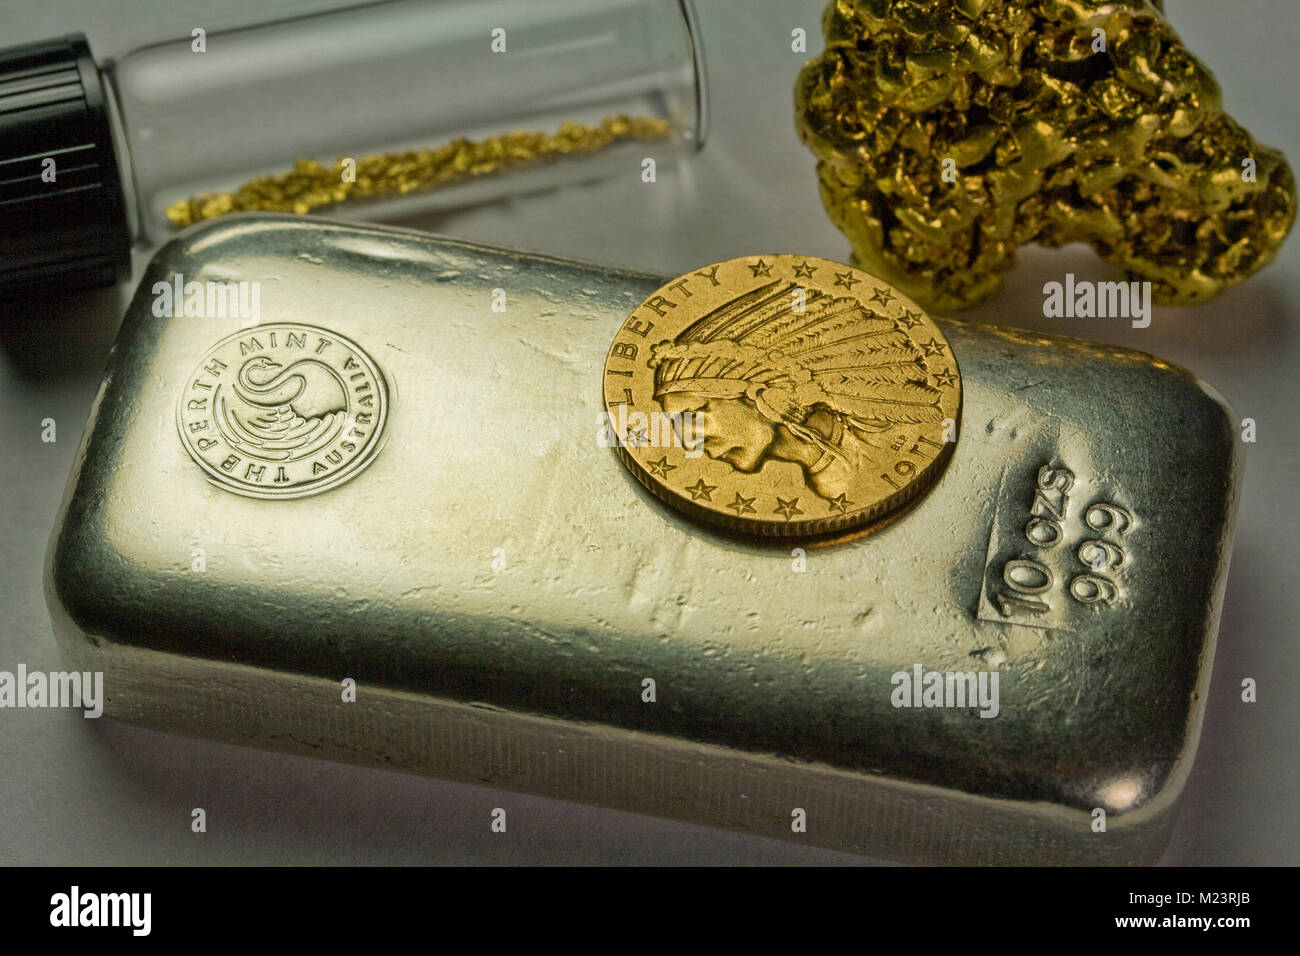 10 onzas de plata Bar, 1911 Gold $5 moneda india y materias pepitas de oro Foto de stock